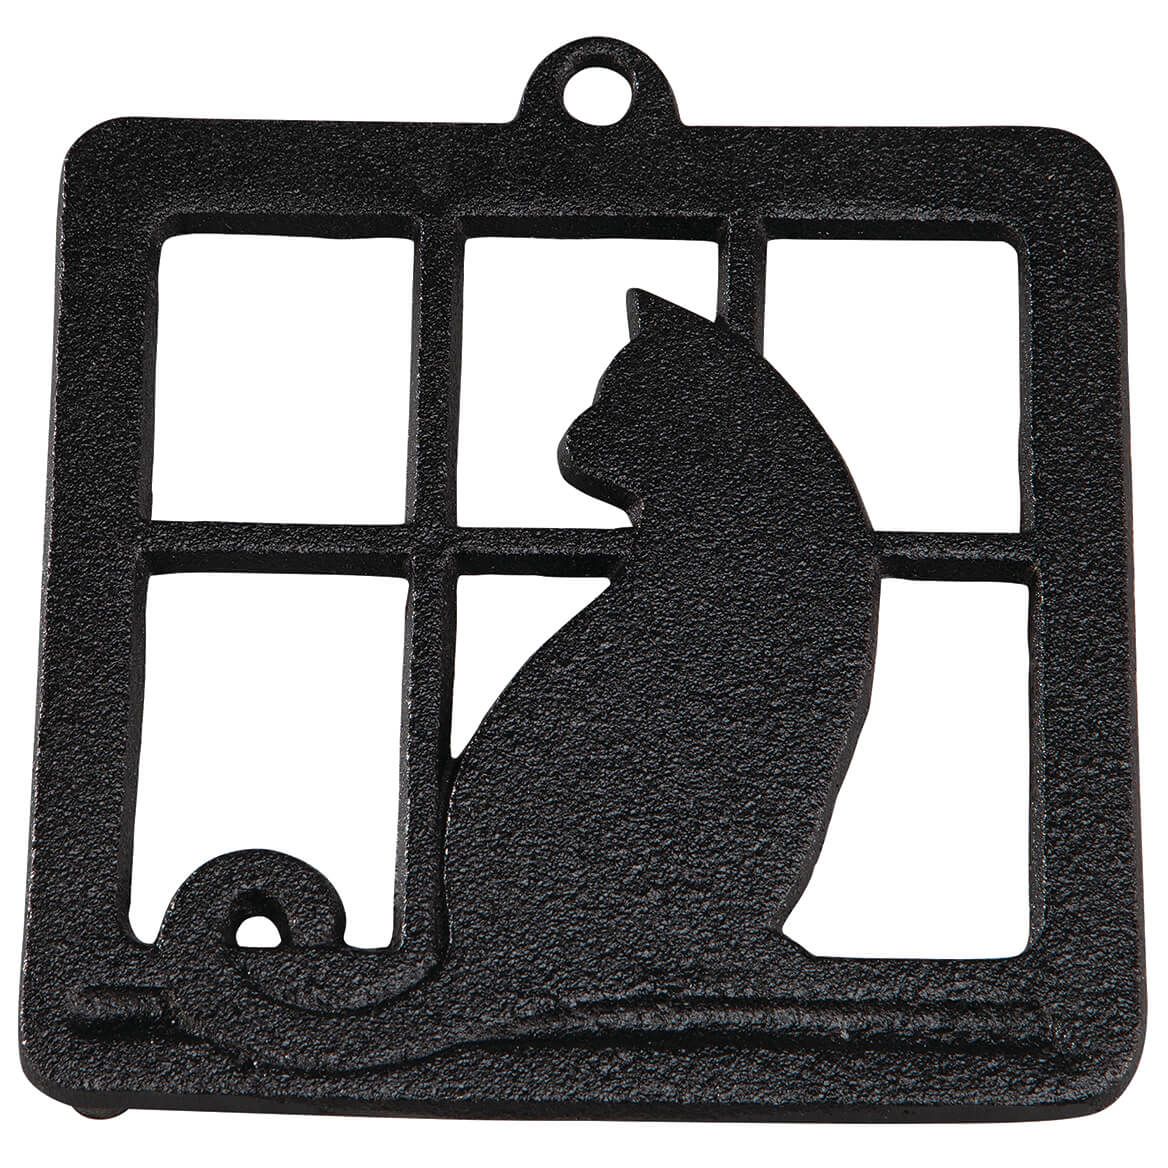 Cat in Window Square Trivet + '-' + 376030